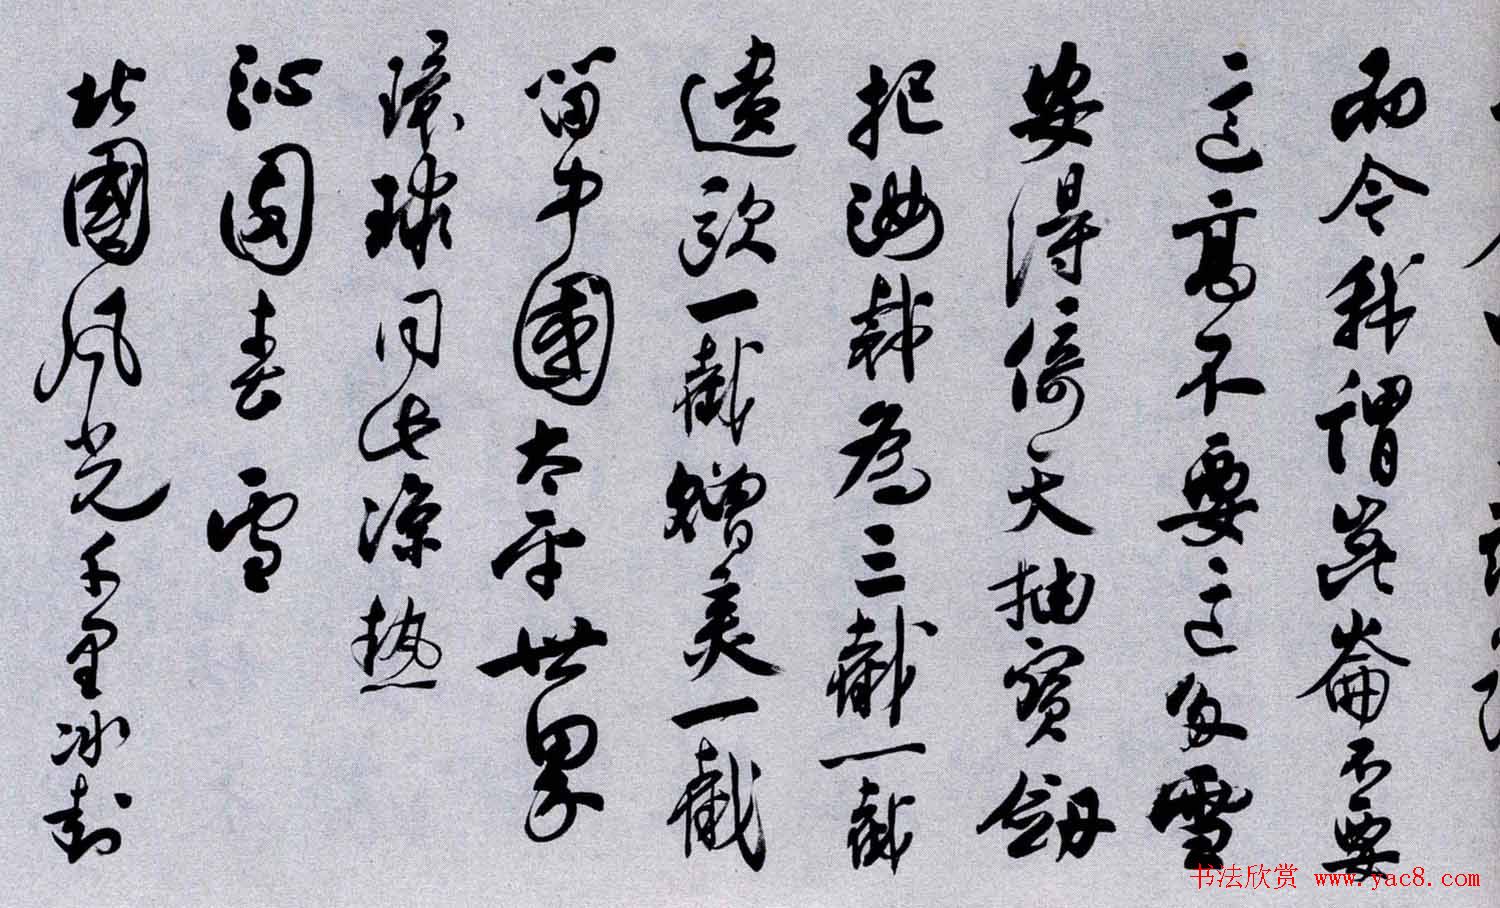 百位书法家书写毛泽东诗词作品横幅